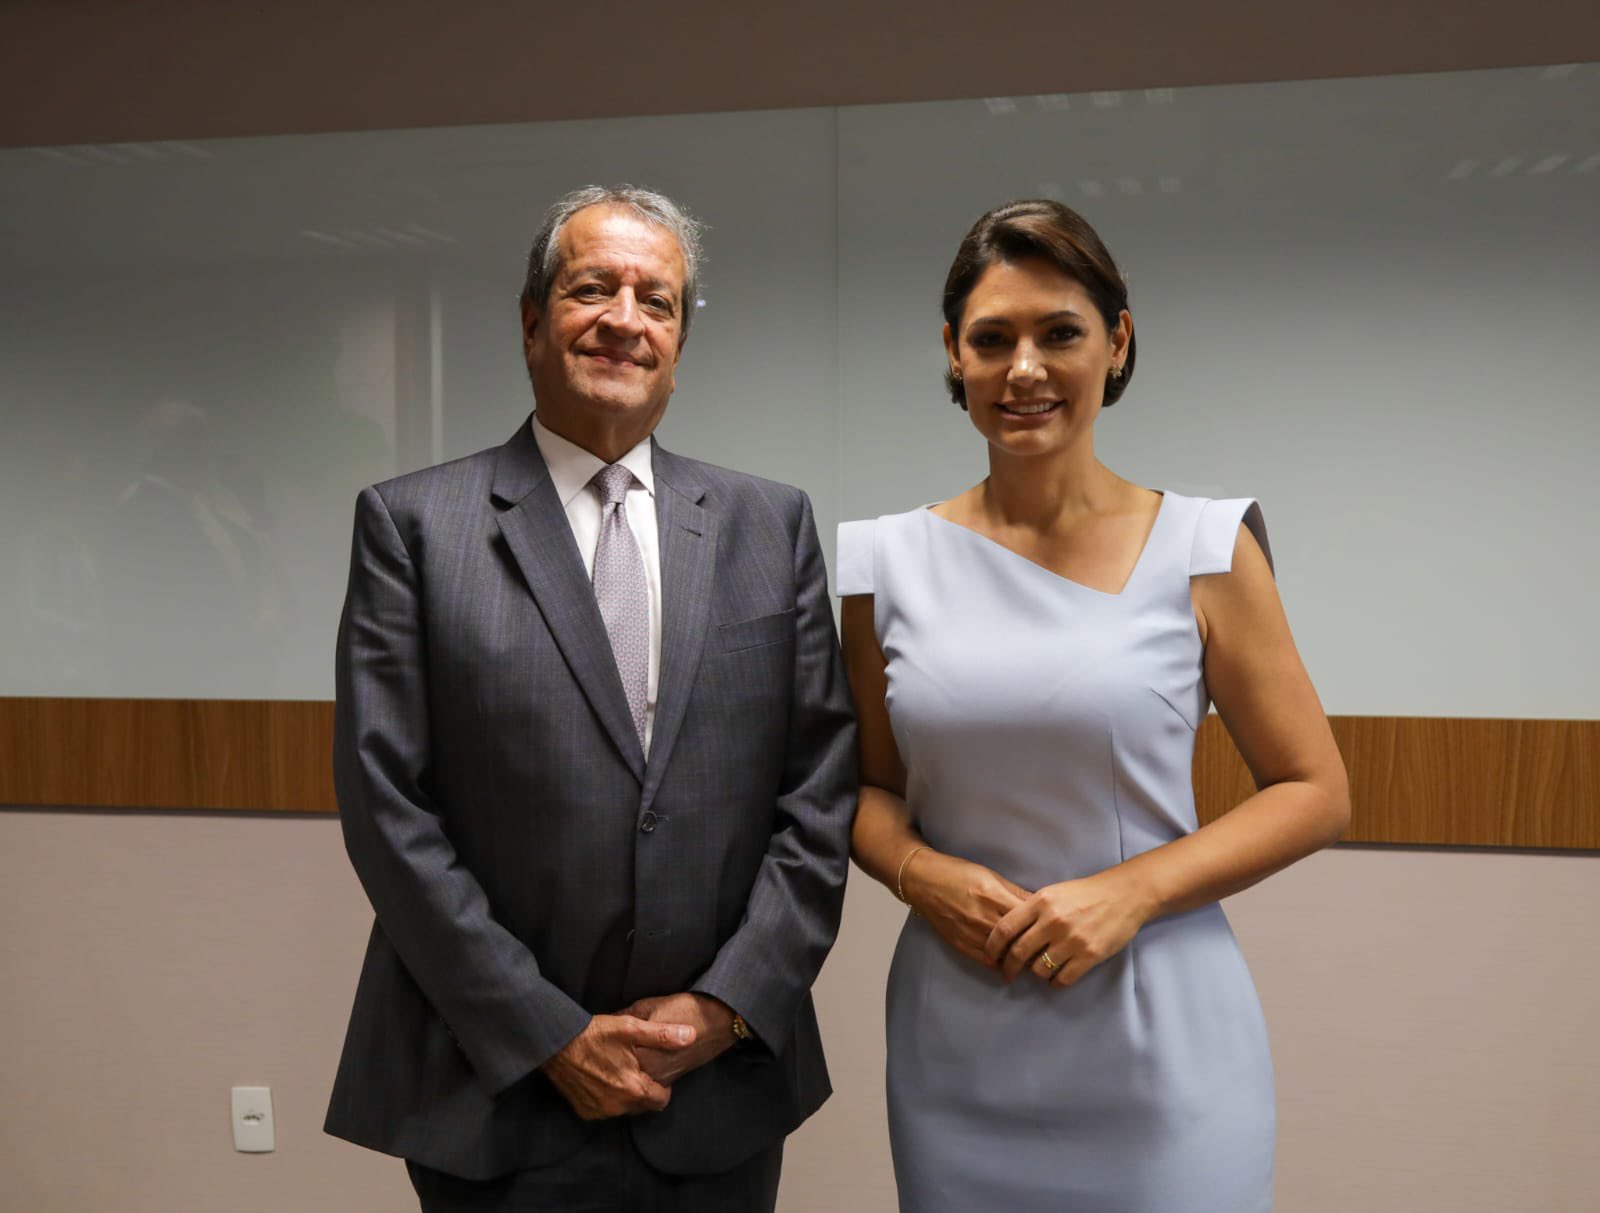 La nueva jugada de Bolsonaro: su esposa decide entrar a la política e integrar el Partido Liberal